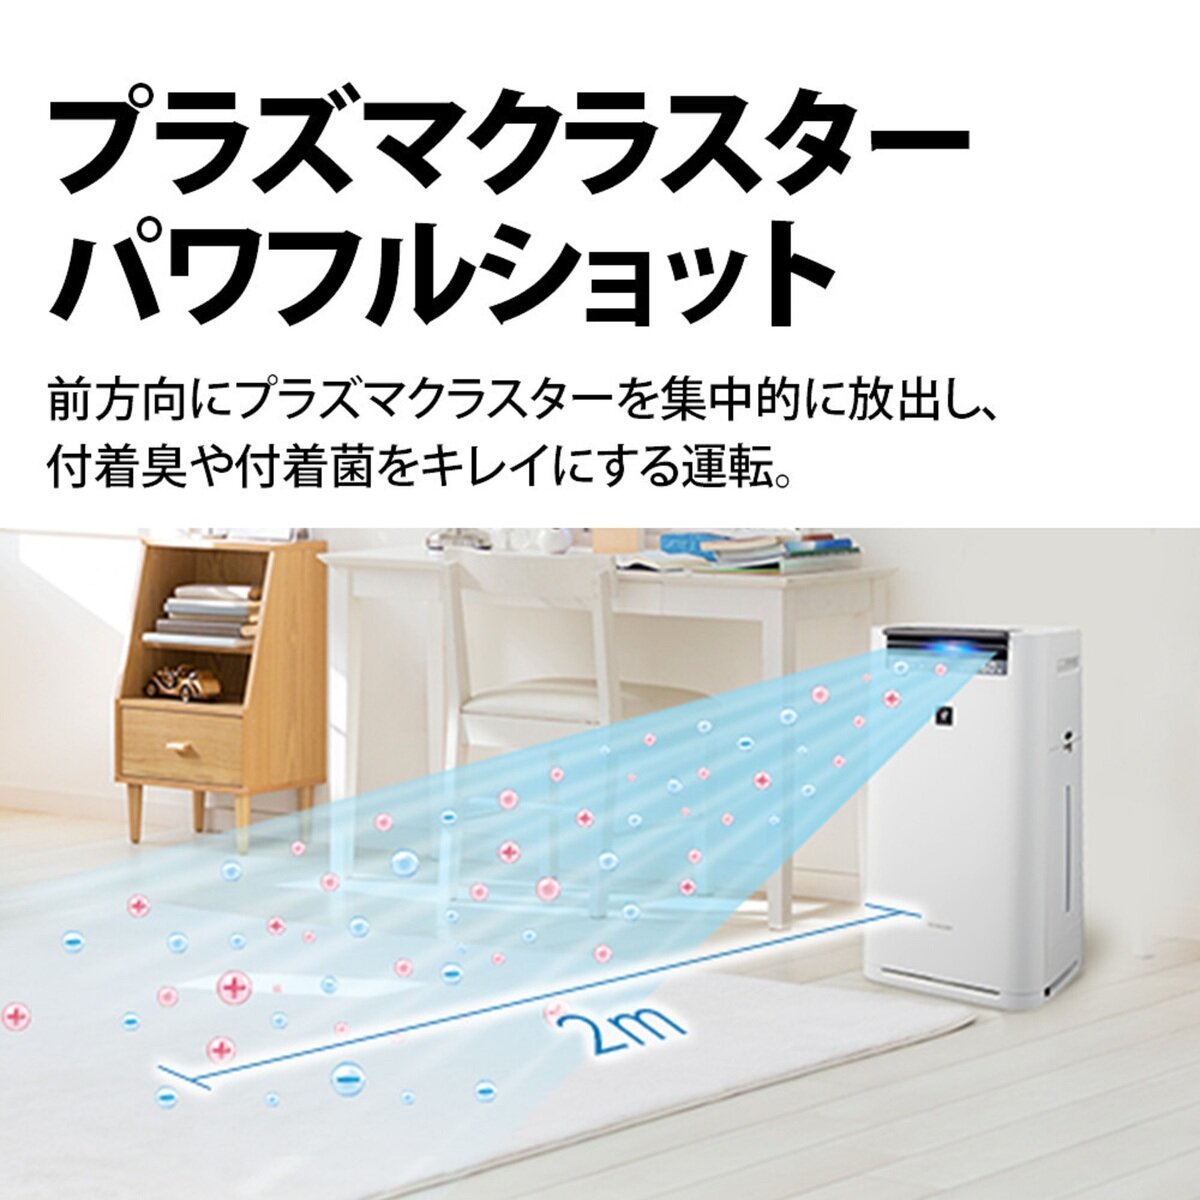 シャープ 空気清浄機 / 加湿器 KI-NS70-W | Costco Japan